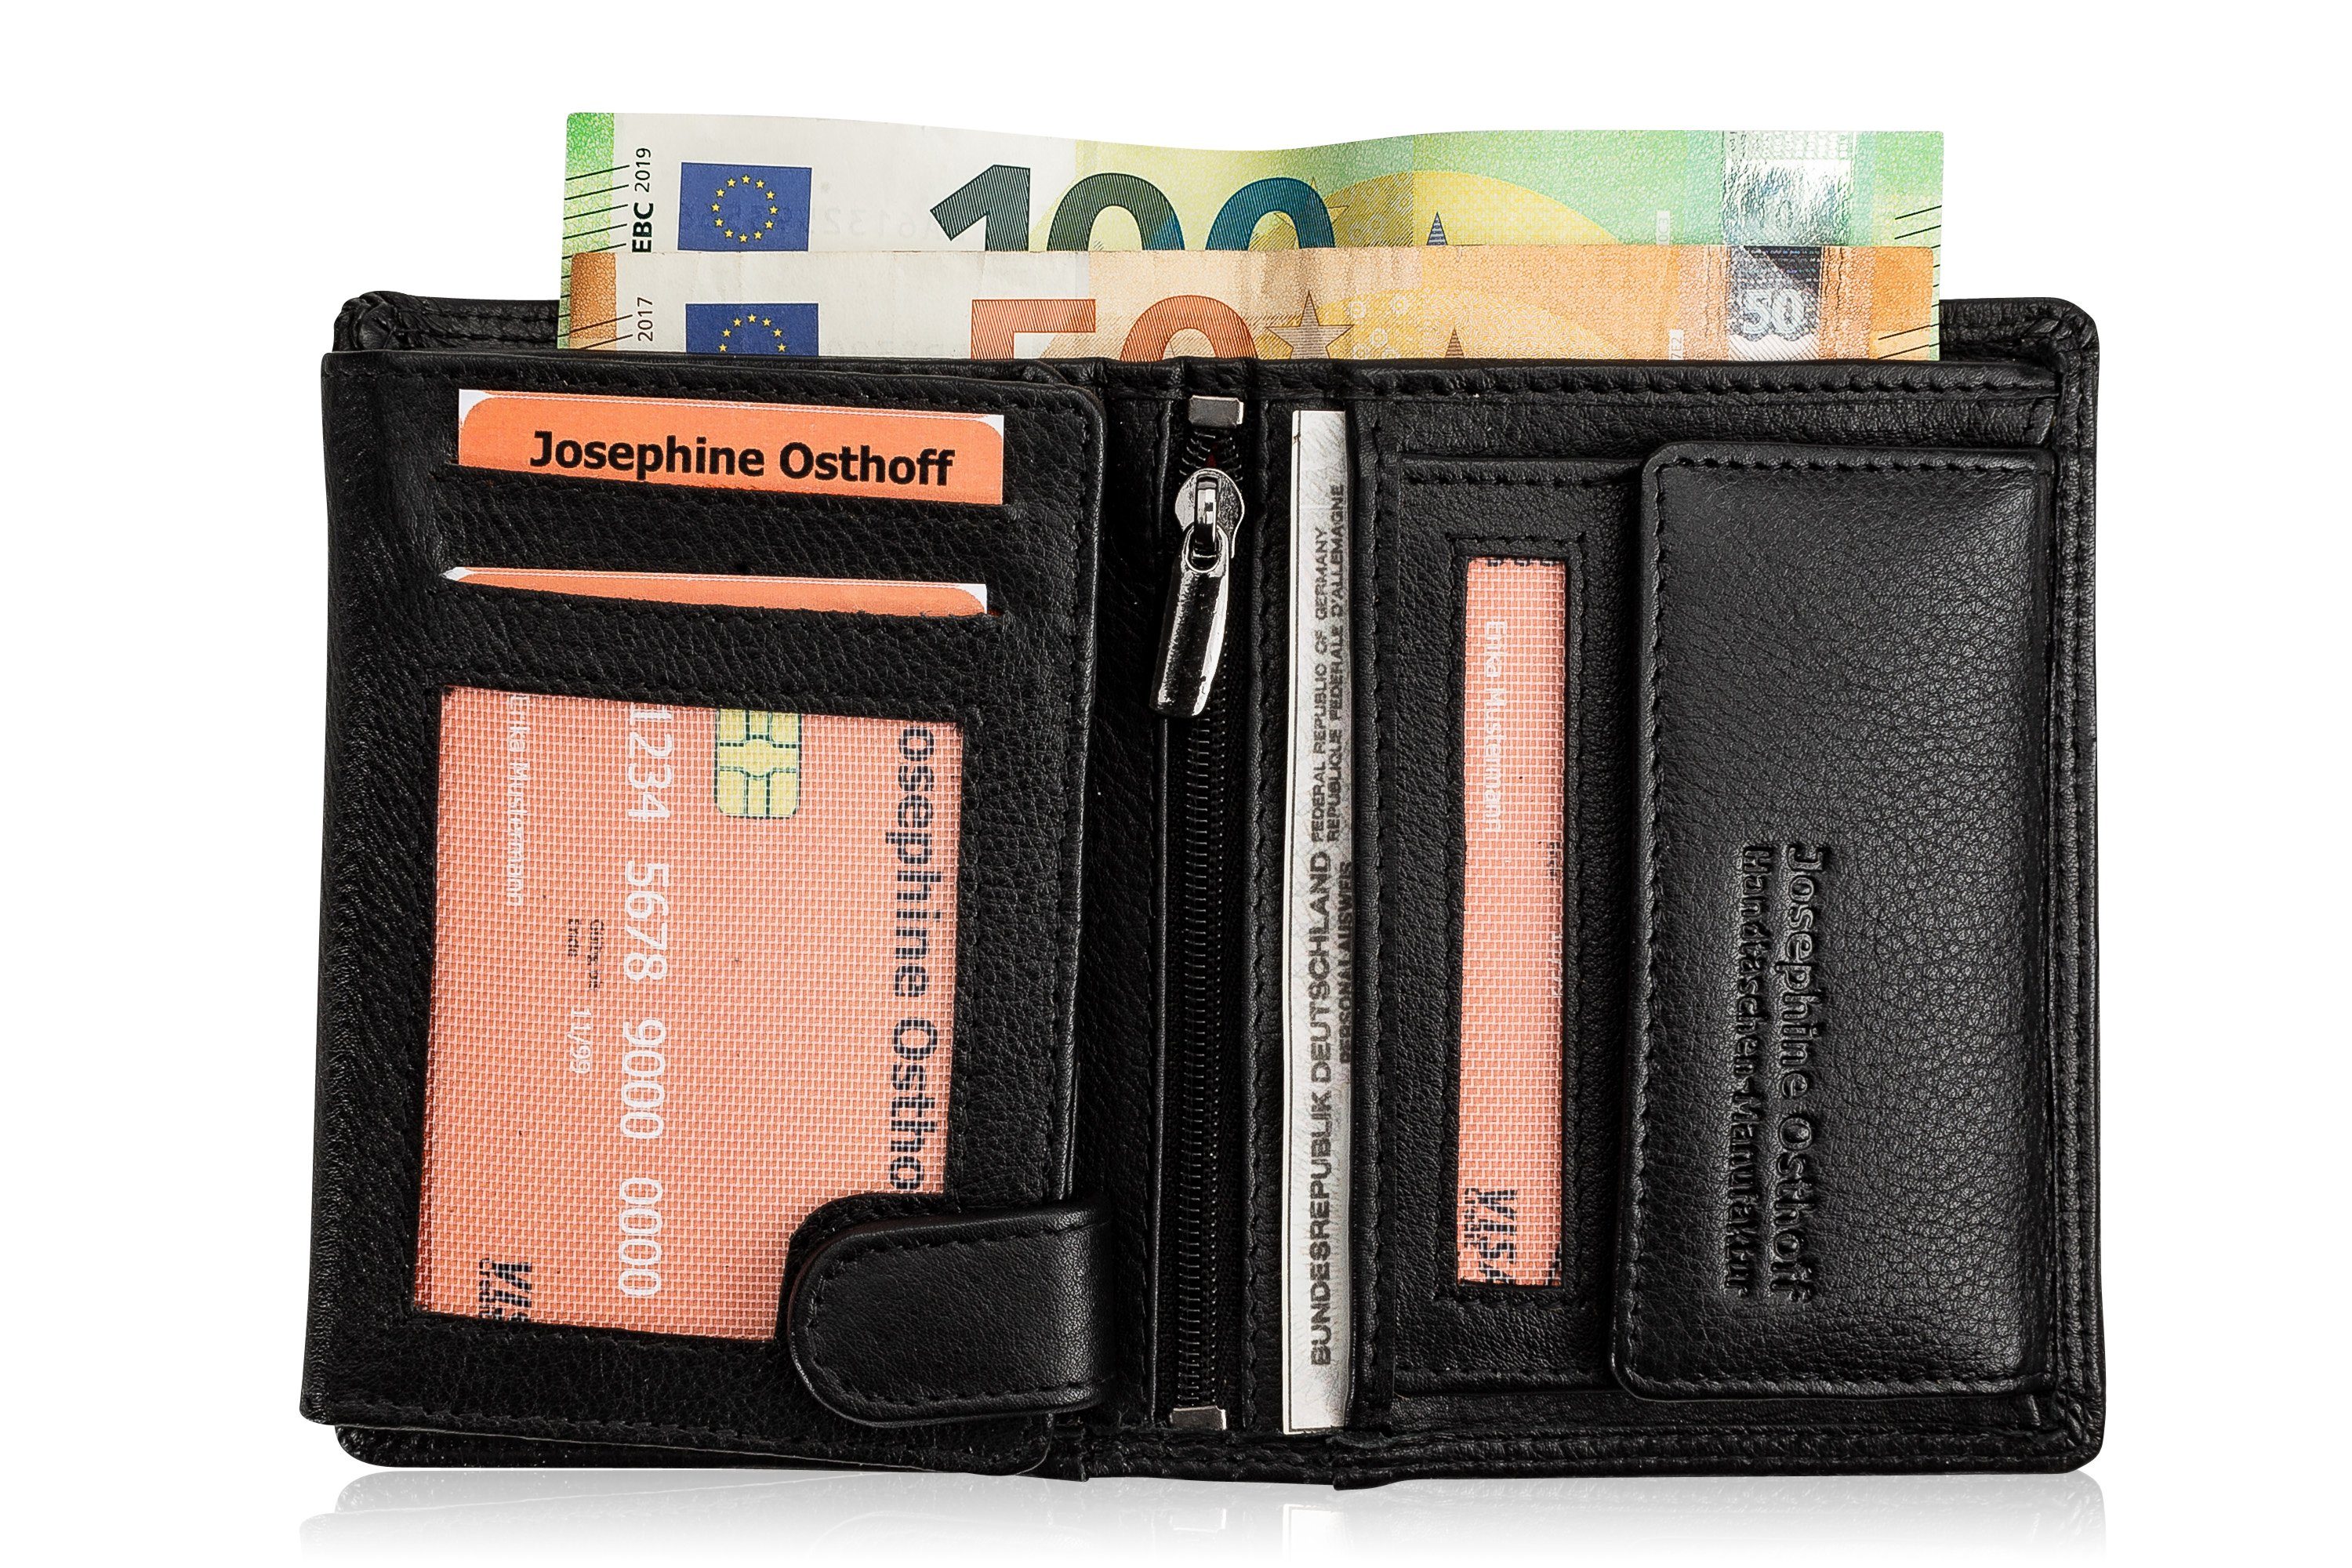 Brieftasche Cash schwarz Geldbörse Osthoff Josephine